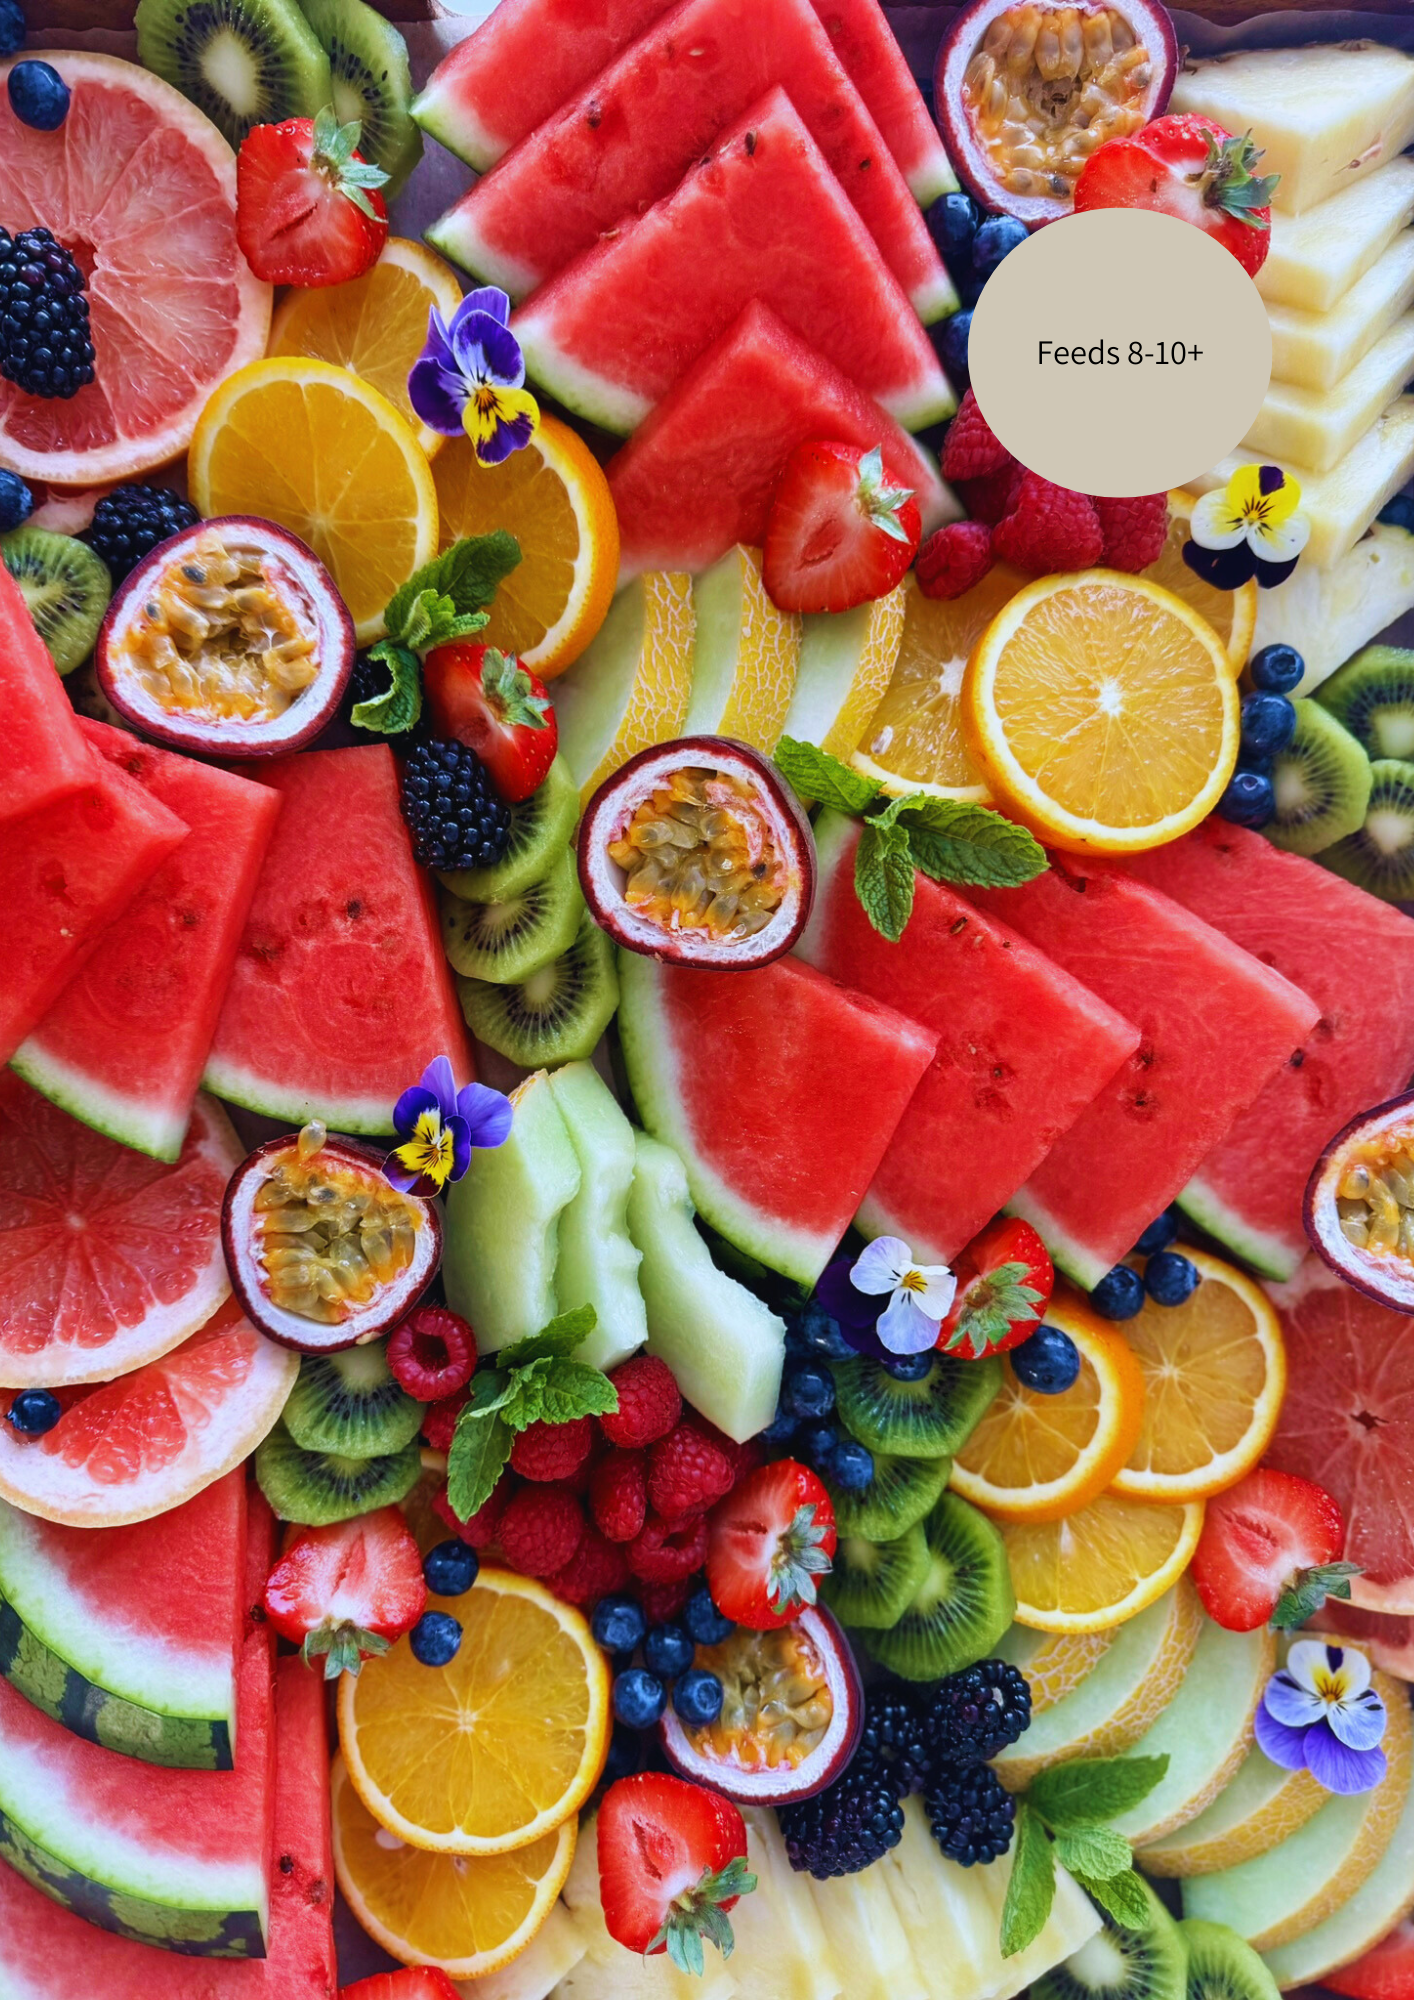 Our Seasonal Fruit Platter